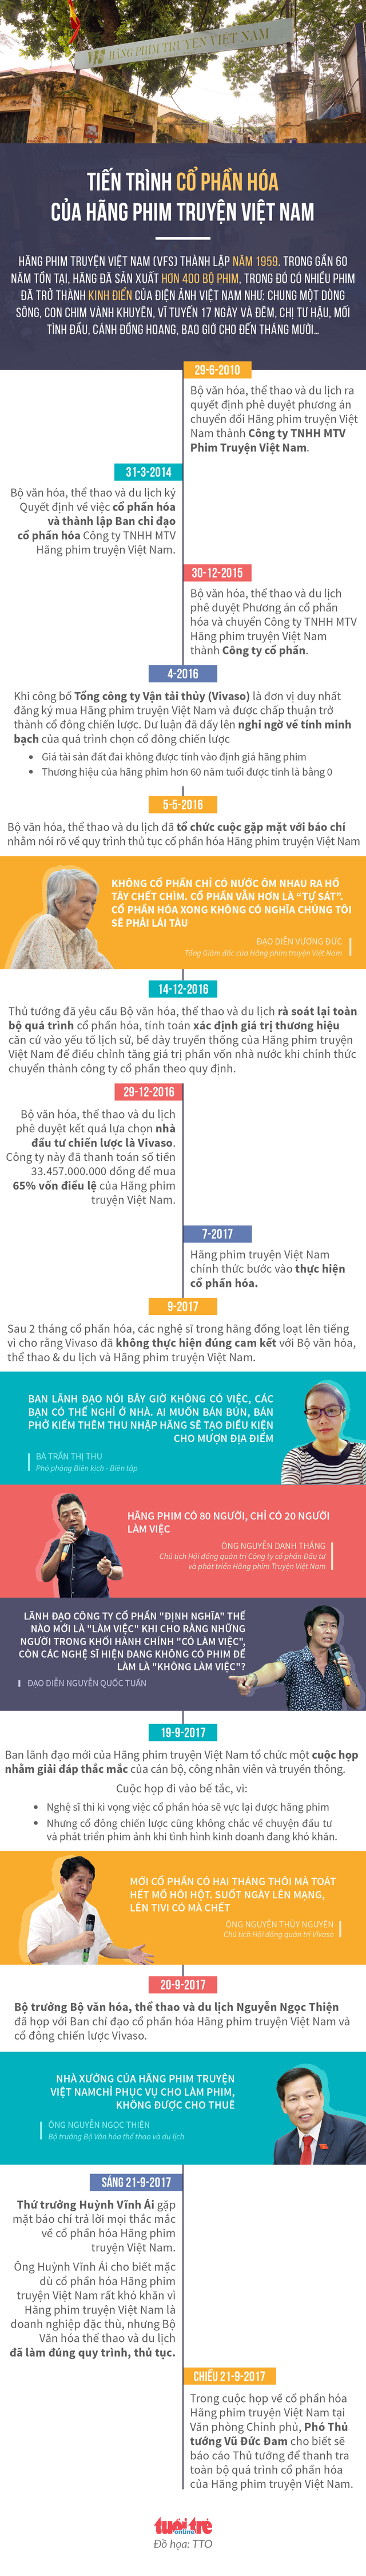 Tiến trình cổ phần hóa hãng phim truyện Việt Nam (Ảnh Tuổi trẻ)